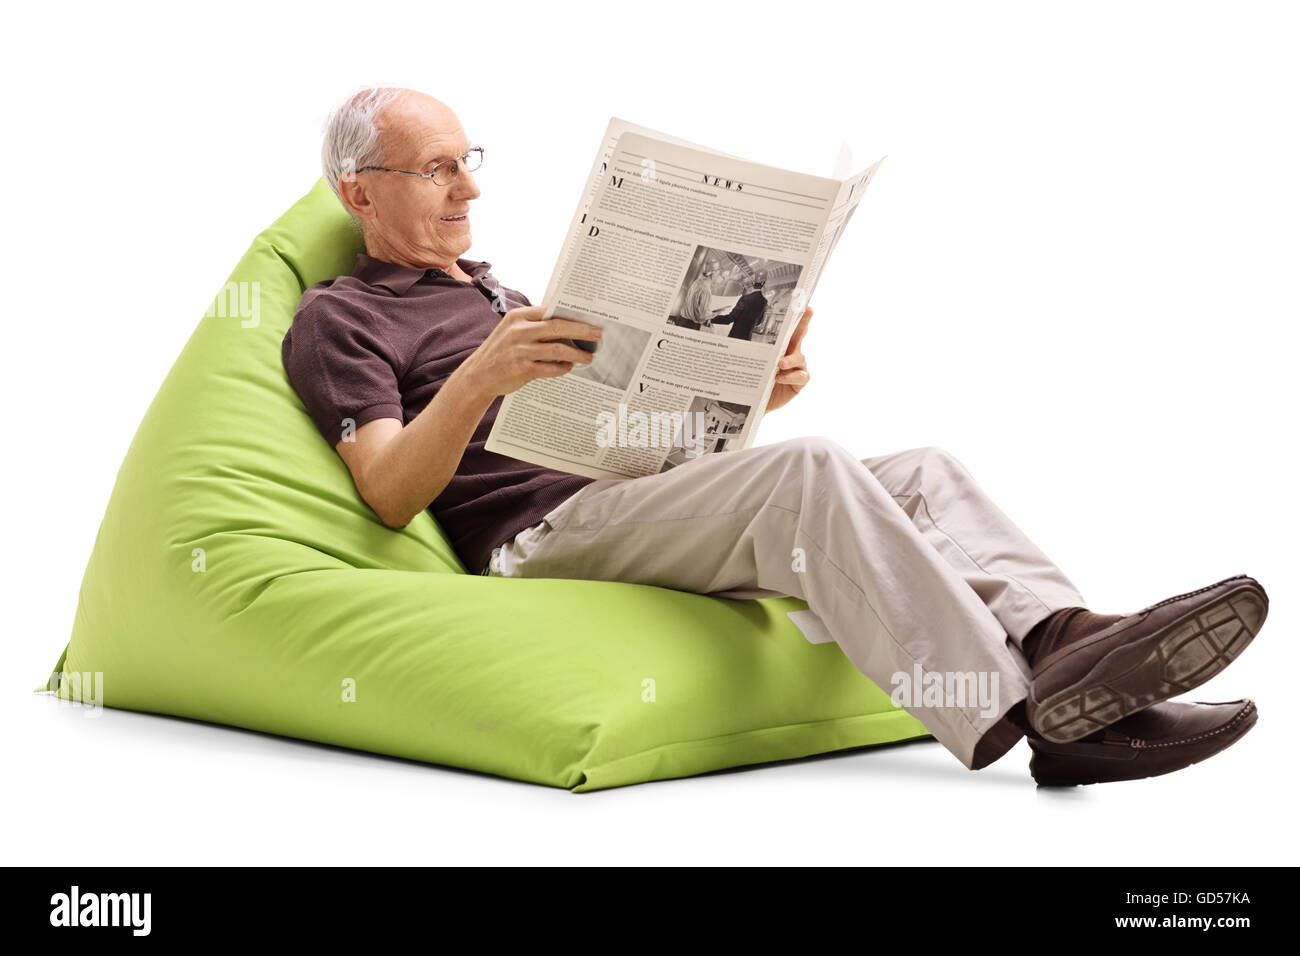 Senior gioiosa leggendo un giornale seduti su un comodo beanbag verde isolato su sfondo bianco Foto Stock